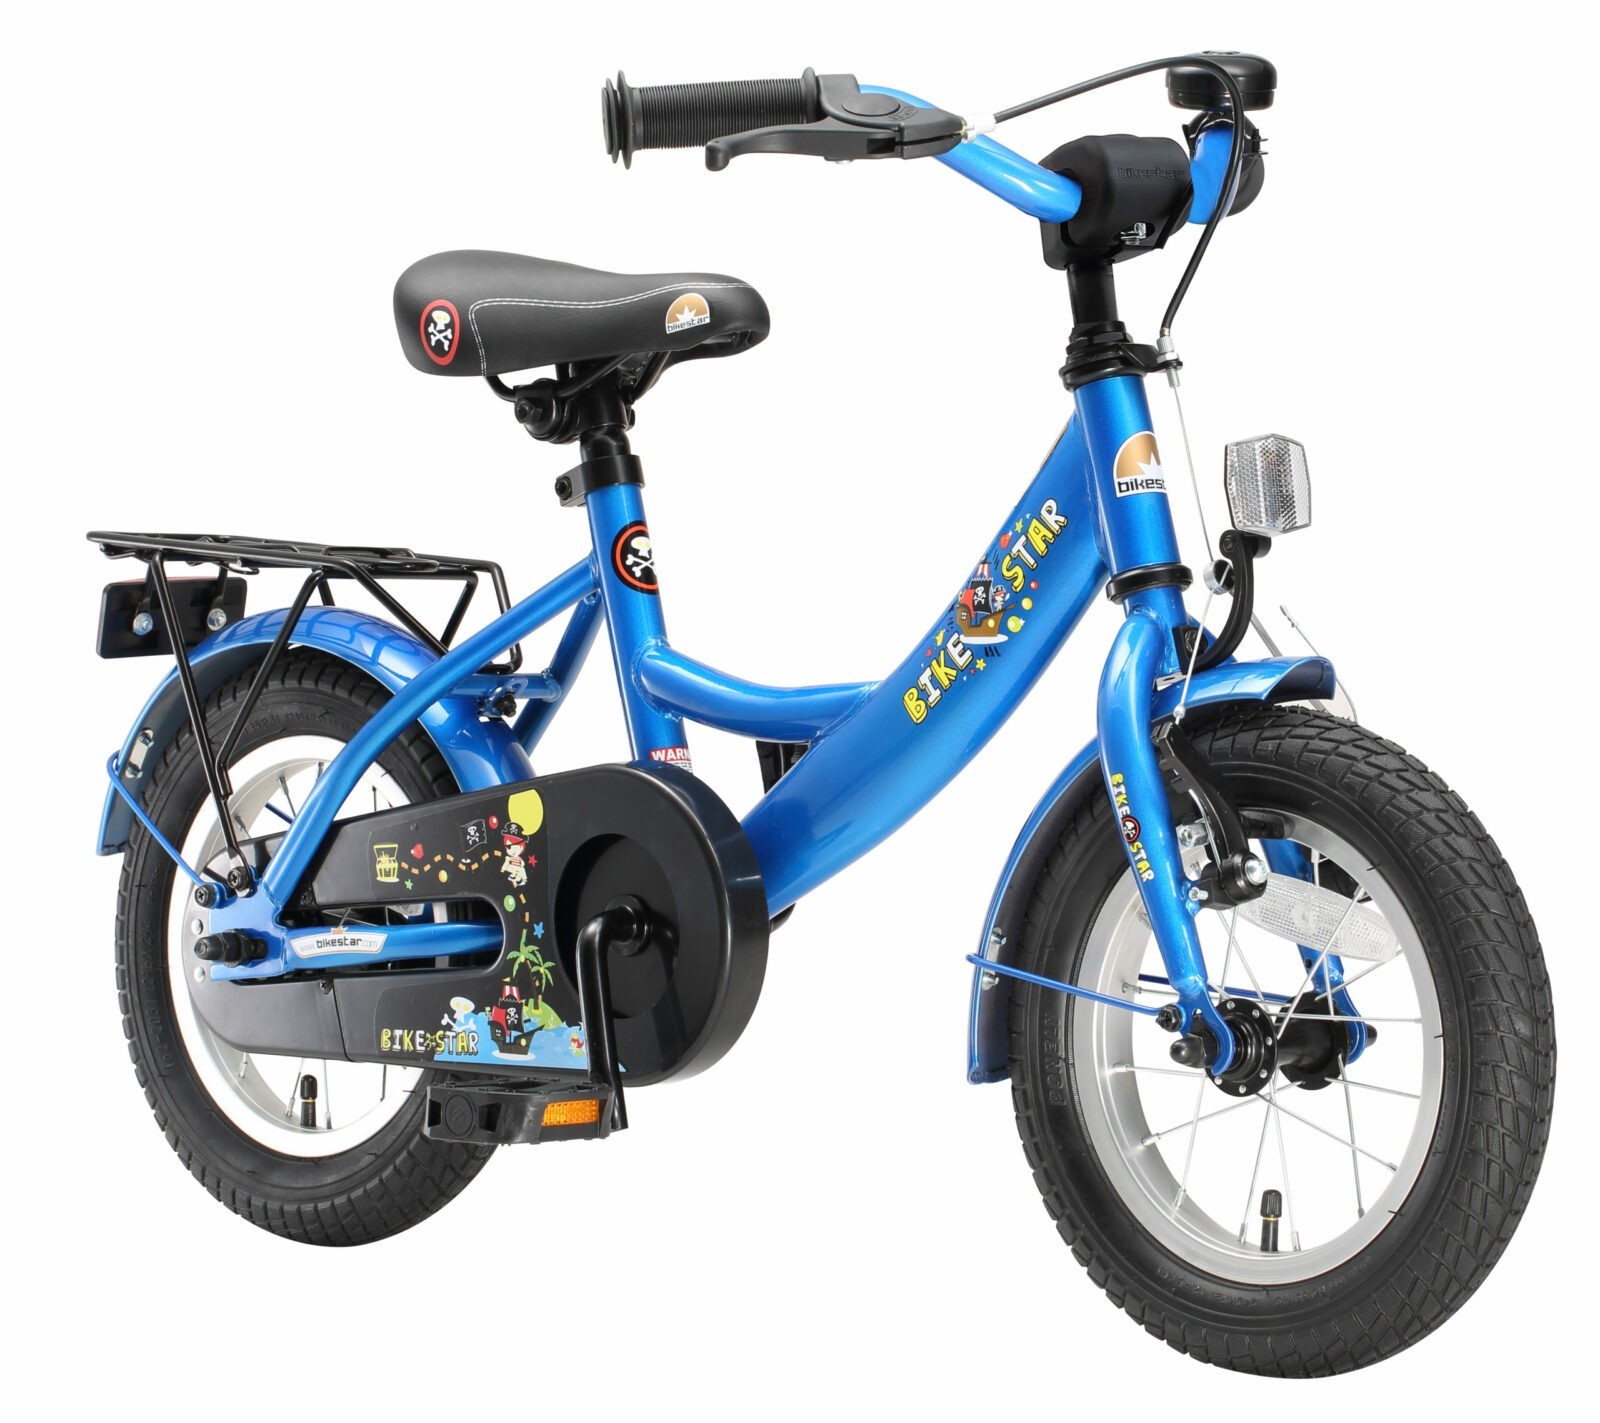 snijden genetisch Inademen Bikestar, Classic kinderfiets, 12 inch, blauw - Fietsdirect